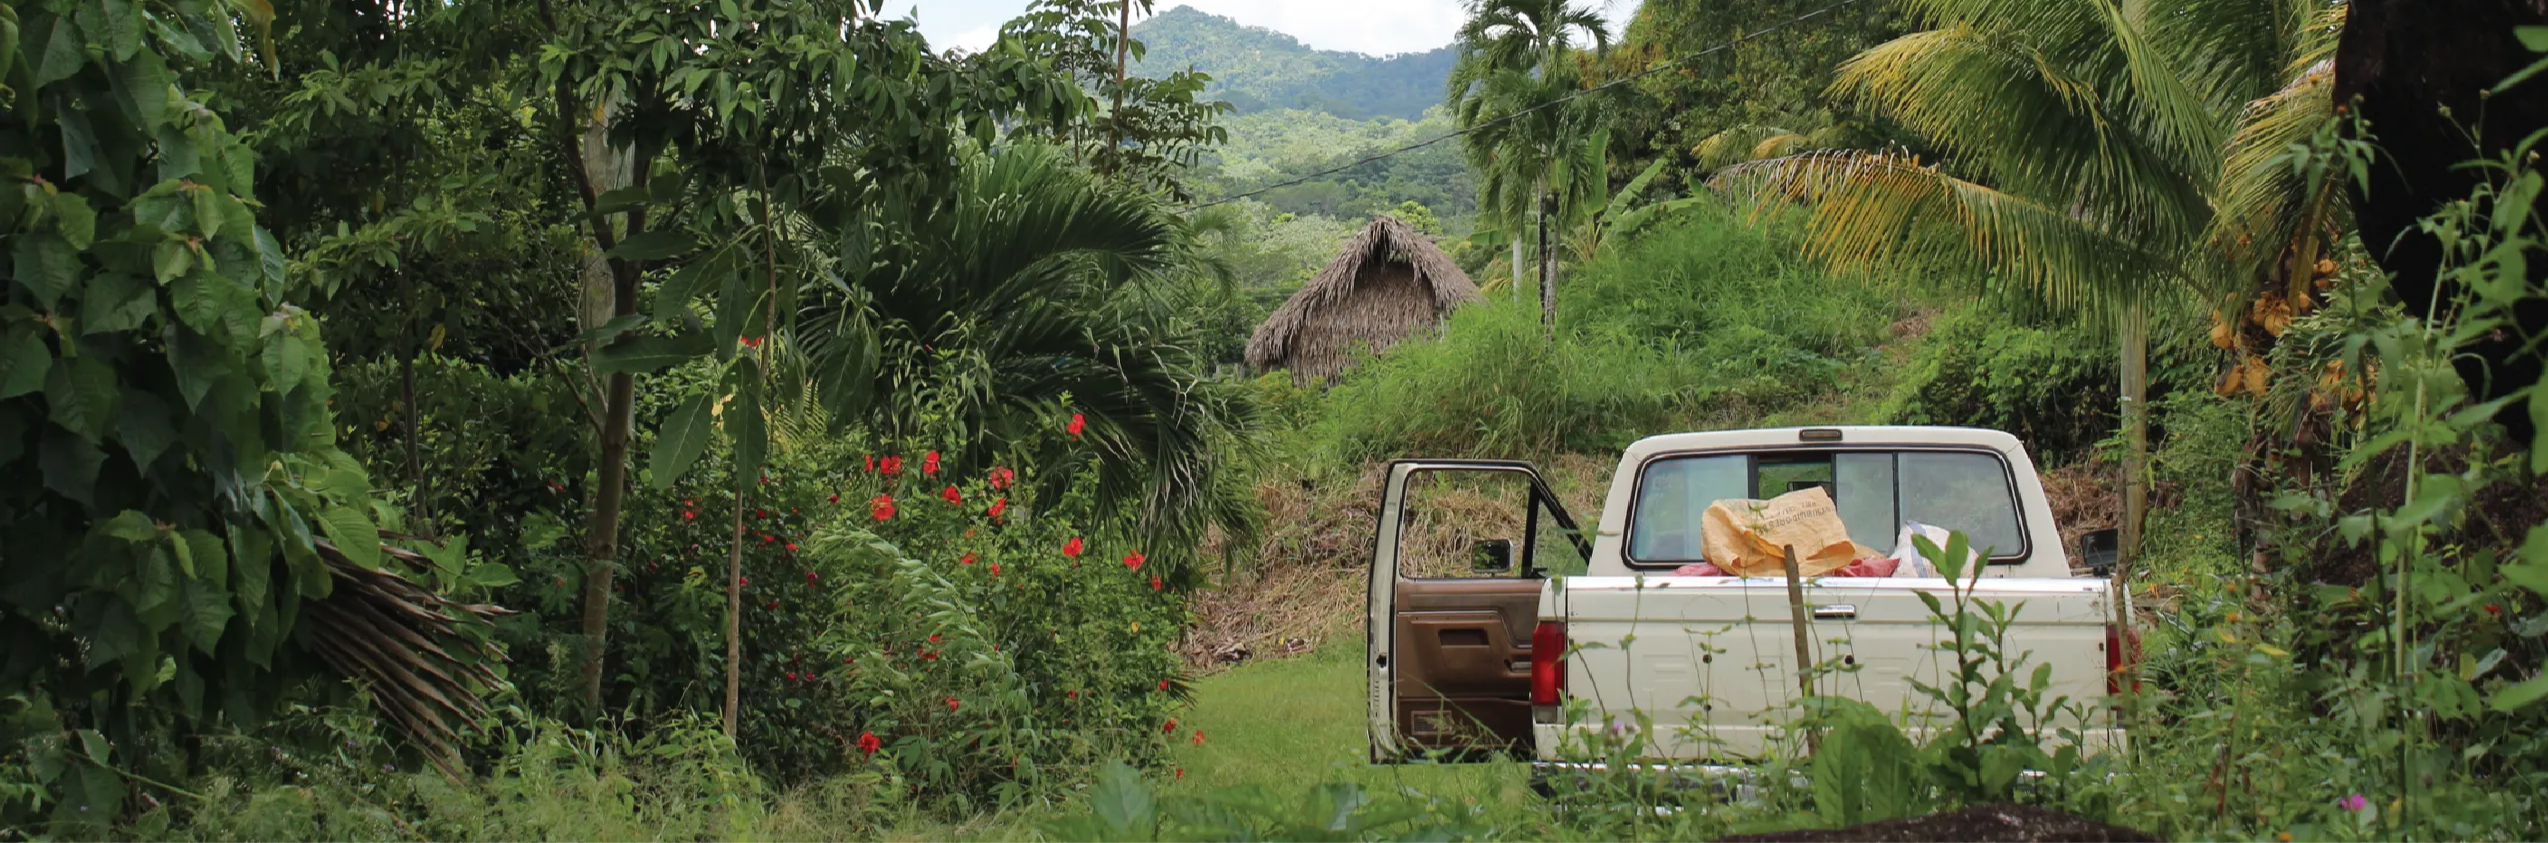 Cocoa harvesting in a small jungle village